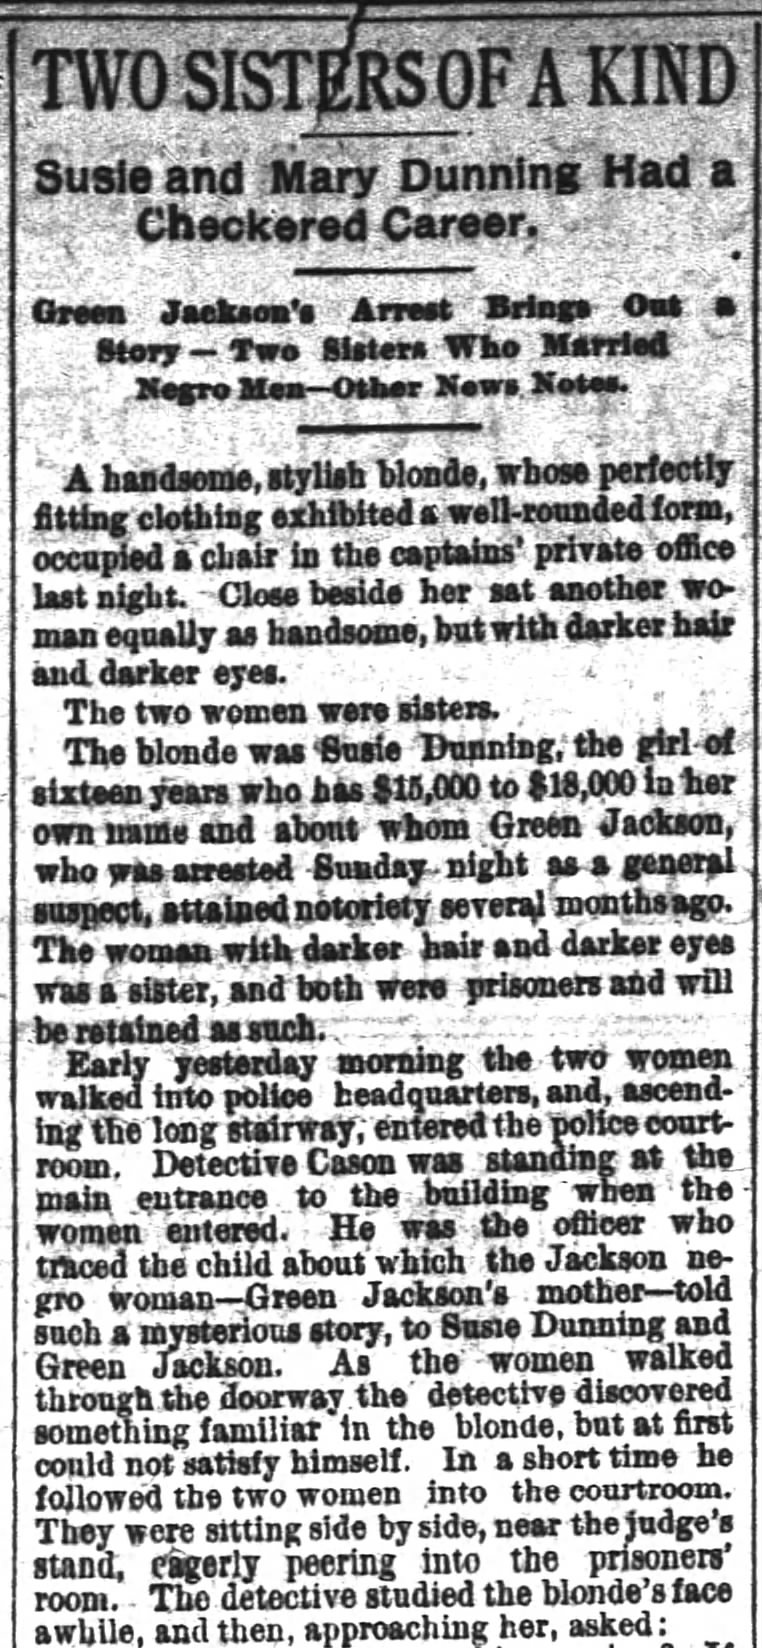 Two Sisters of A Kind- The Atlanta Constitution (Atlanta, Georgia) 28 February 1888